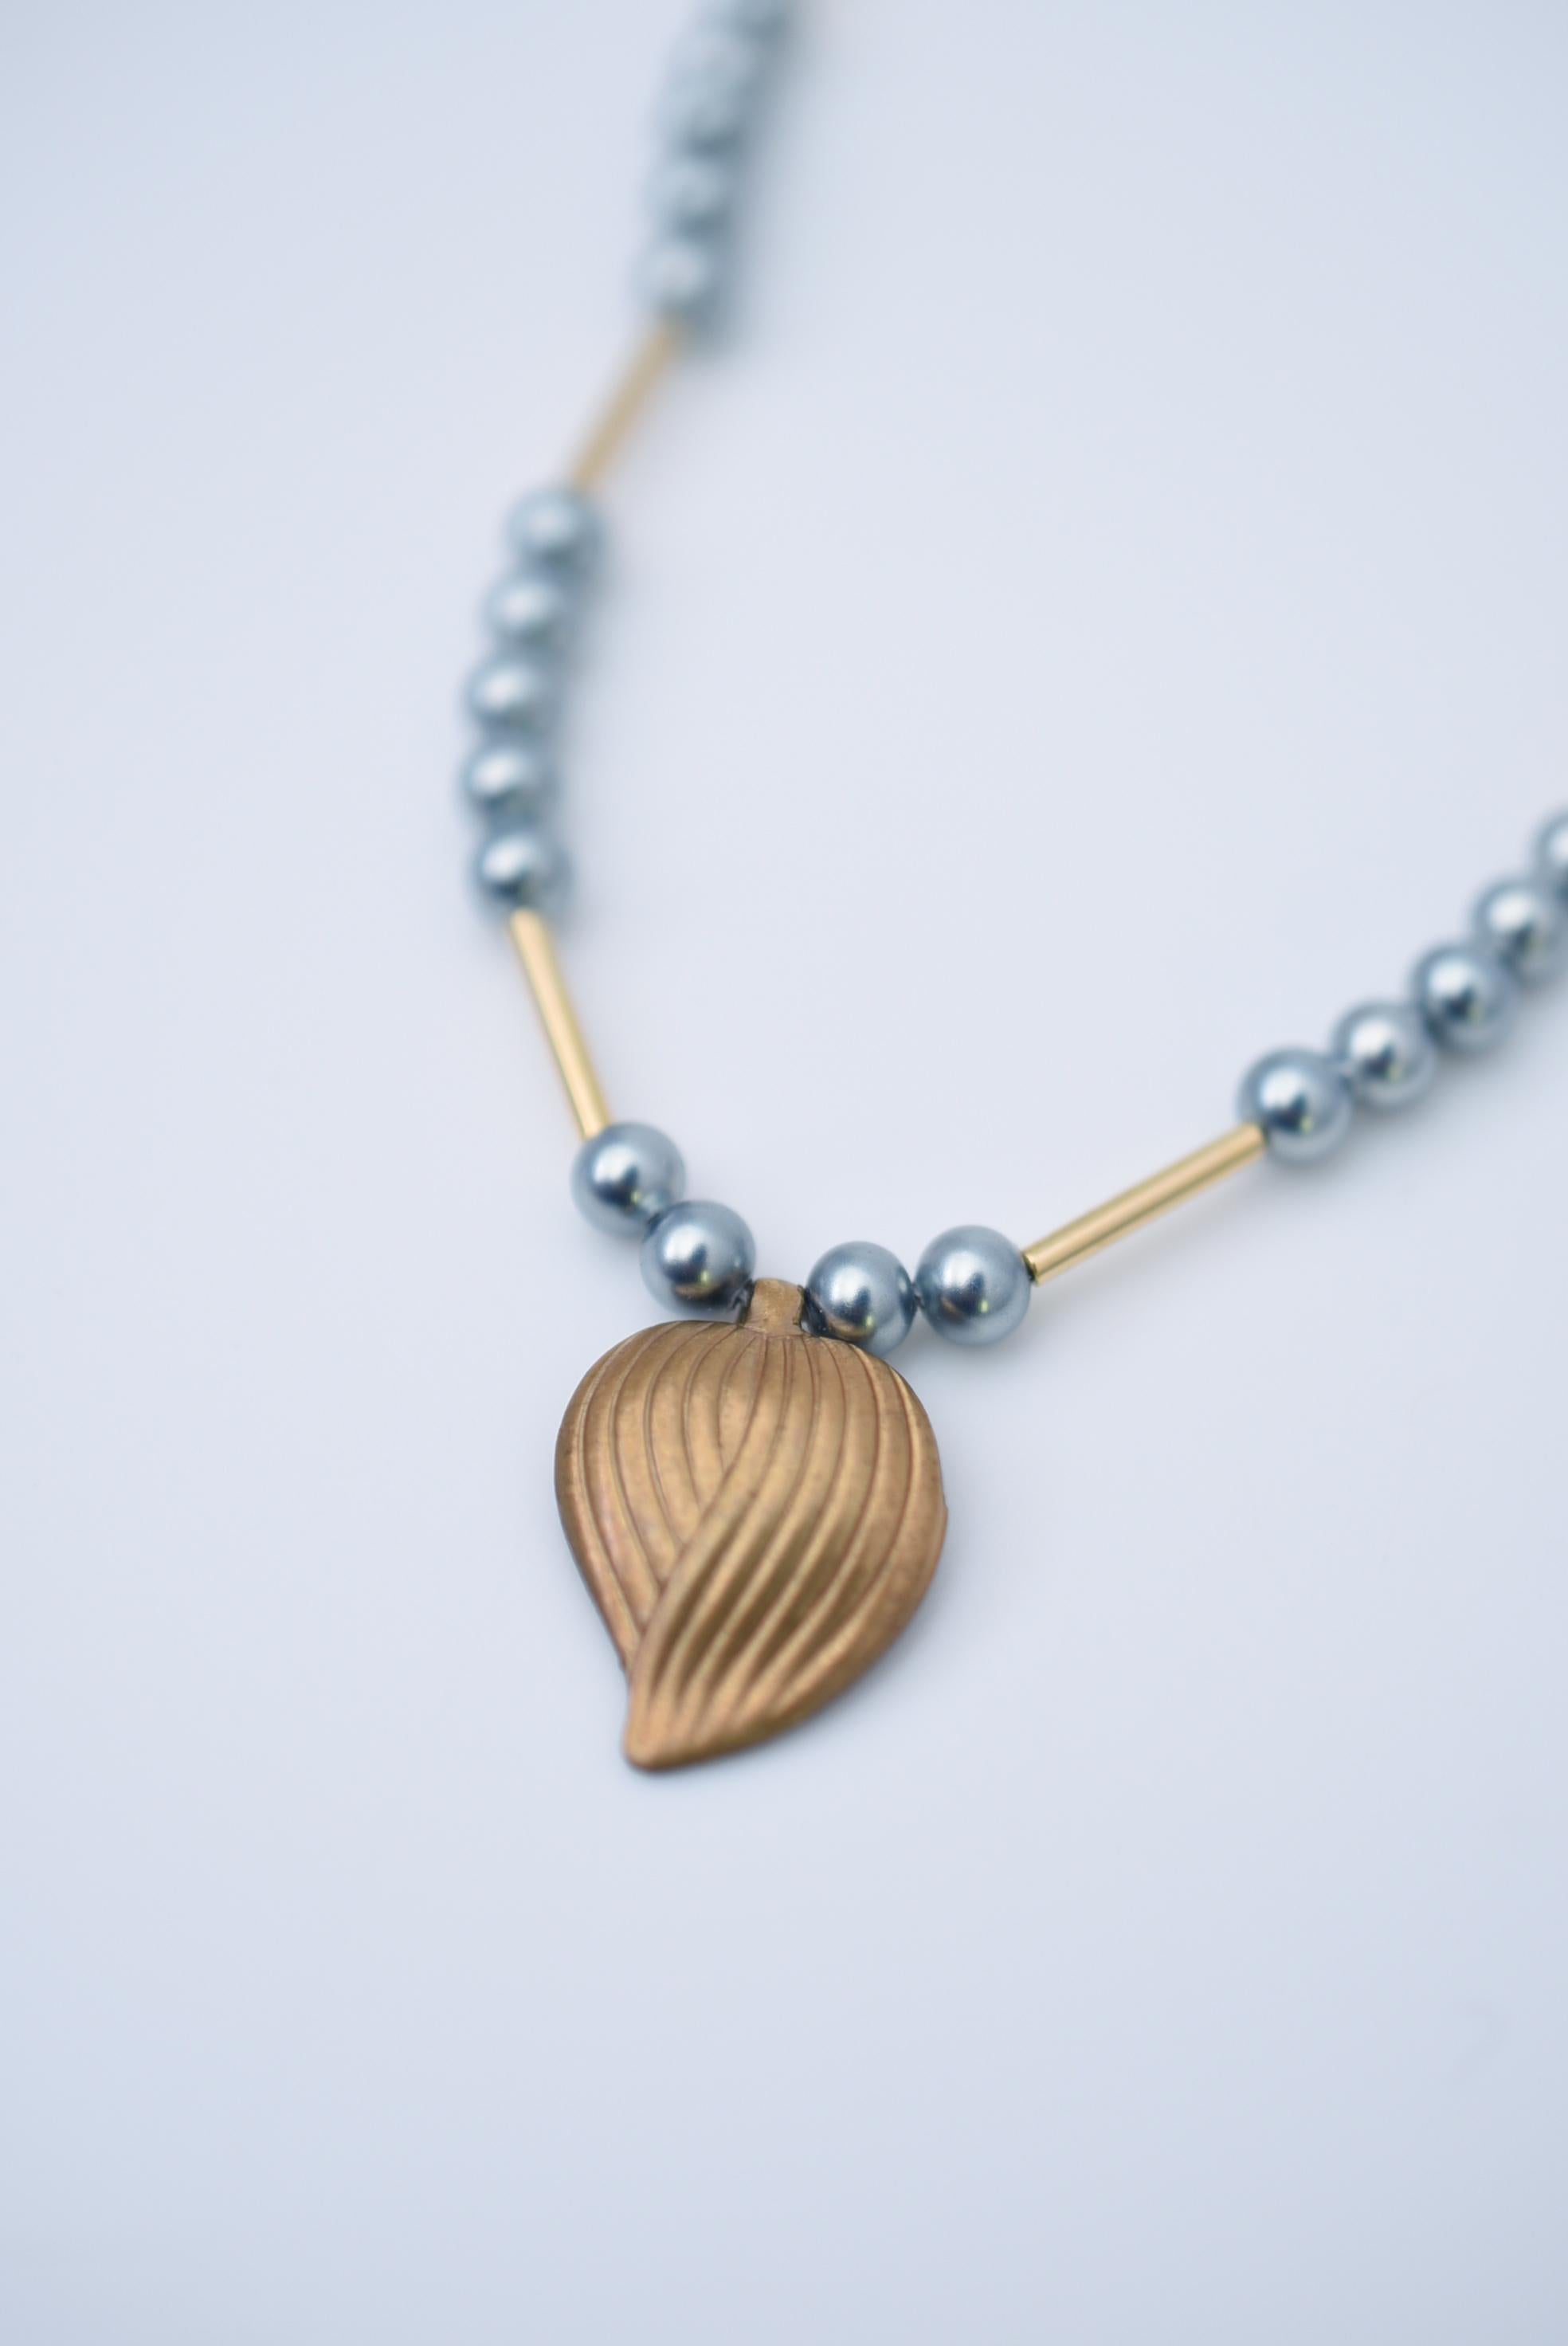 Matière:Laiton, perles de verre japonaises vintage des années 1970, perles de verre, pièces métalliques américaines des années 1970
taille:environ 39cm


Ce collier est simple et facile à assortir à différentes tenues.
Il peut être porté en toute